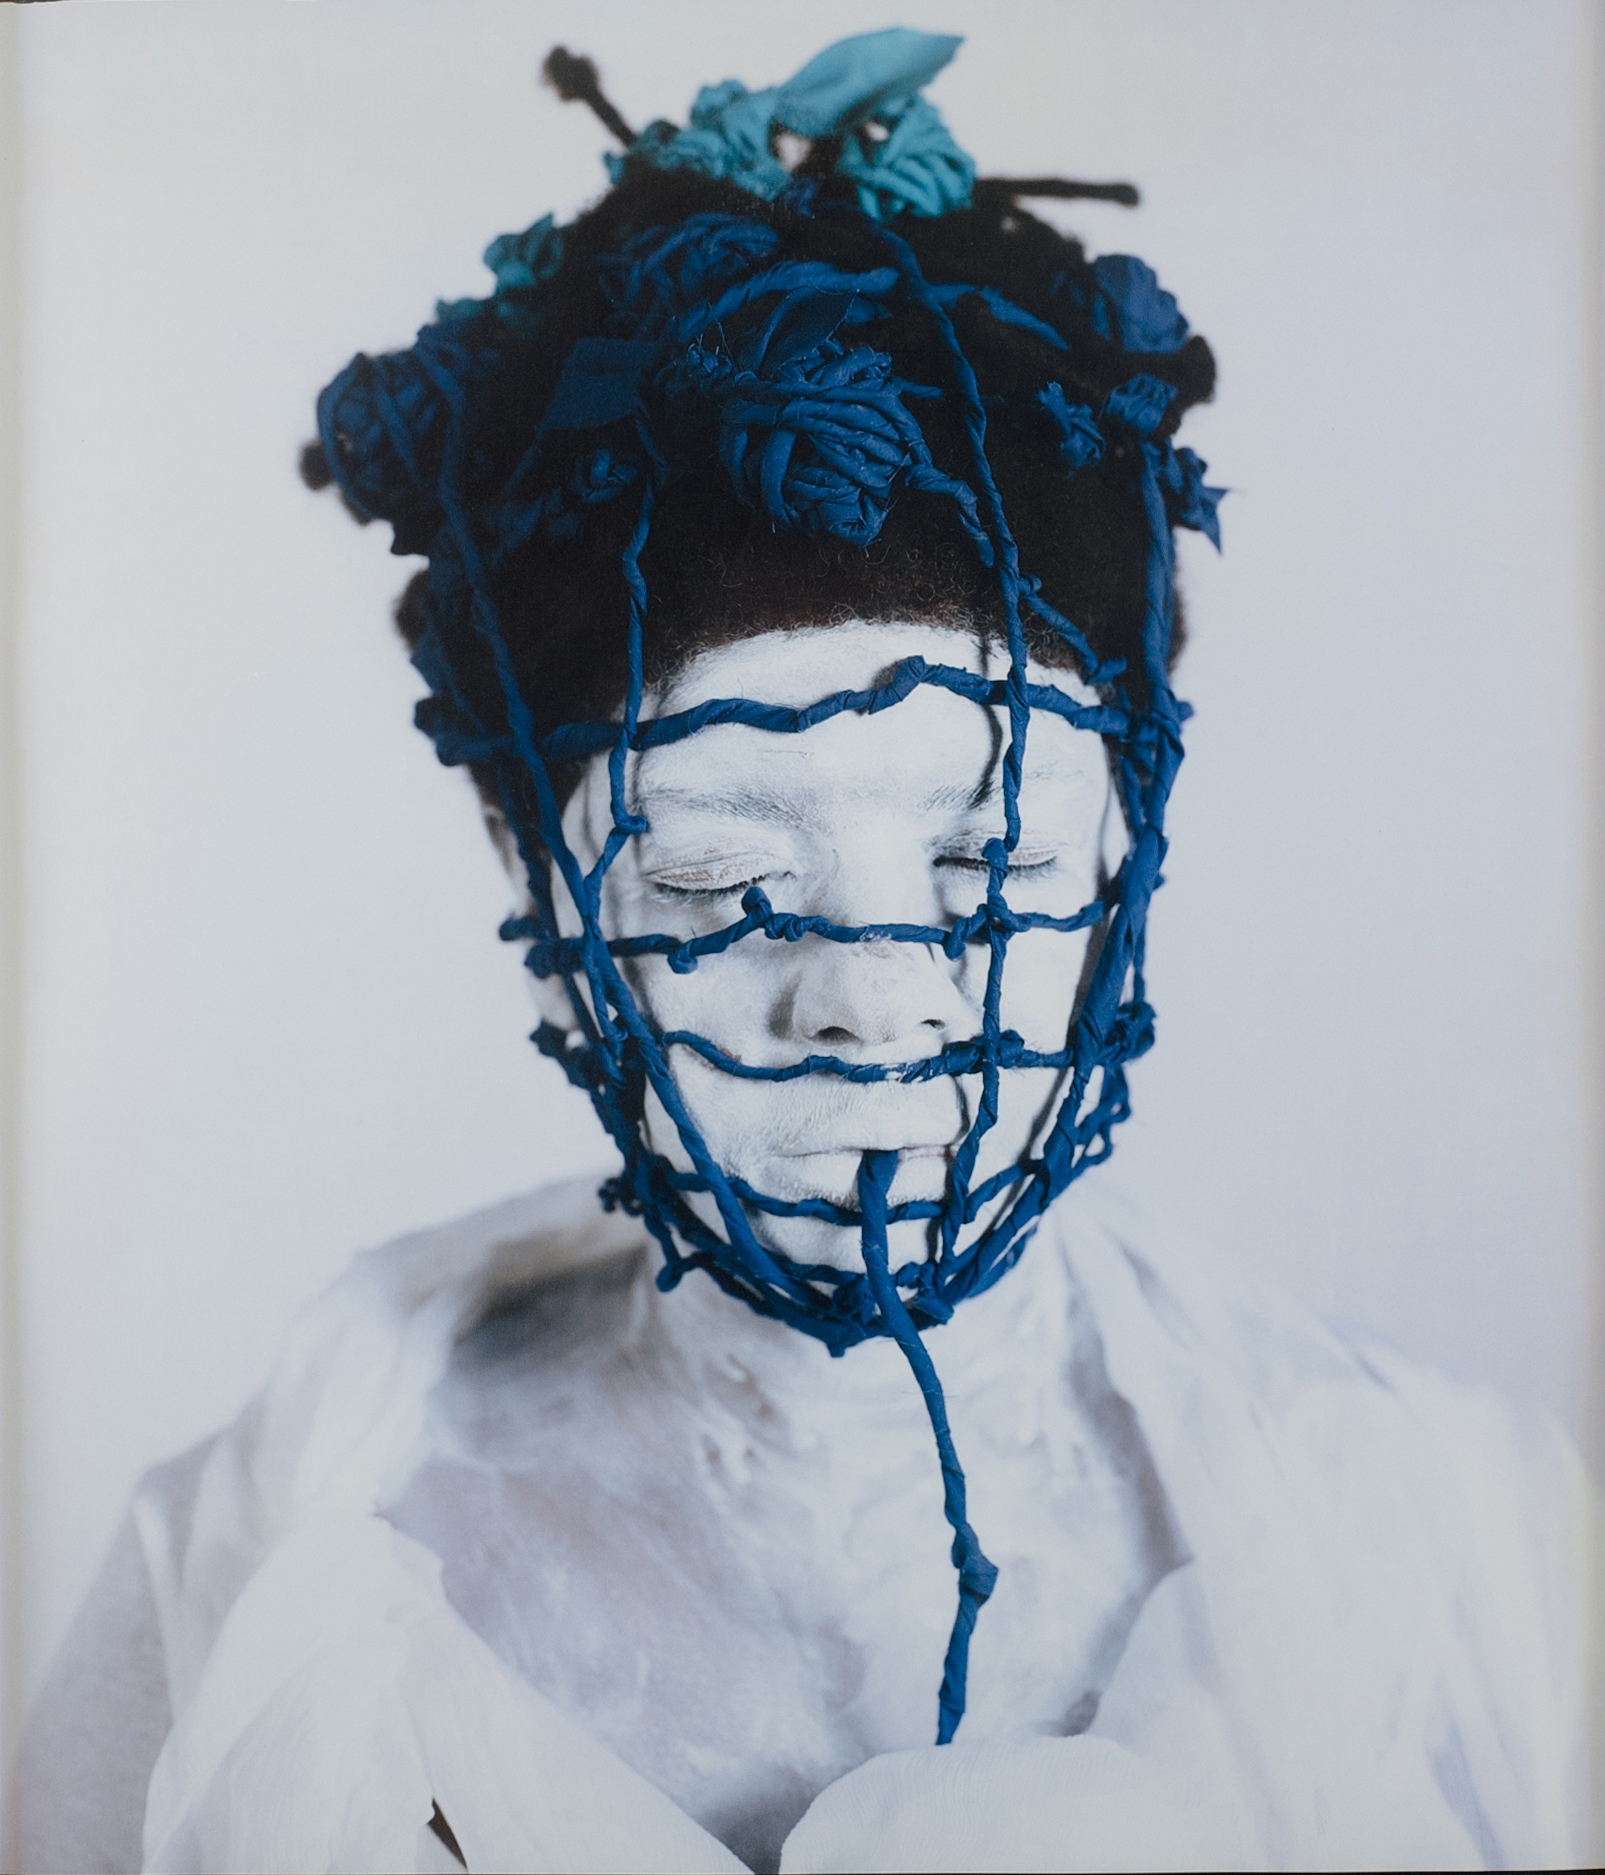  María Magdalena Campos-Pons, Freedom Trap, c. 2013, Polaroid Polacolor Pro 24 x 20 Photograph, 24 x 20 inches (61 x 50.8 cm) 